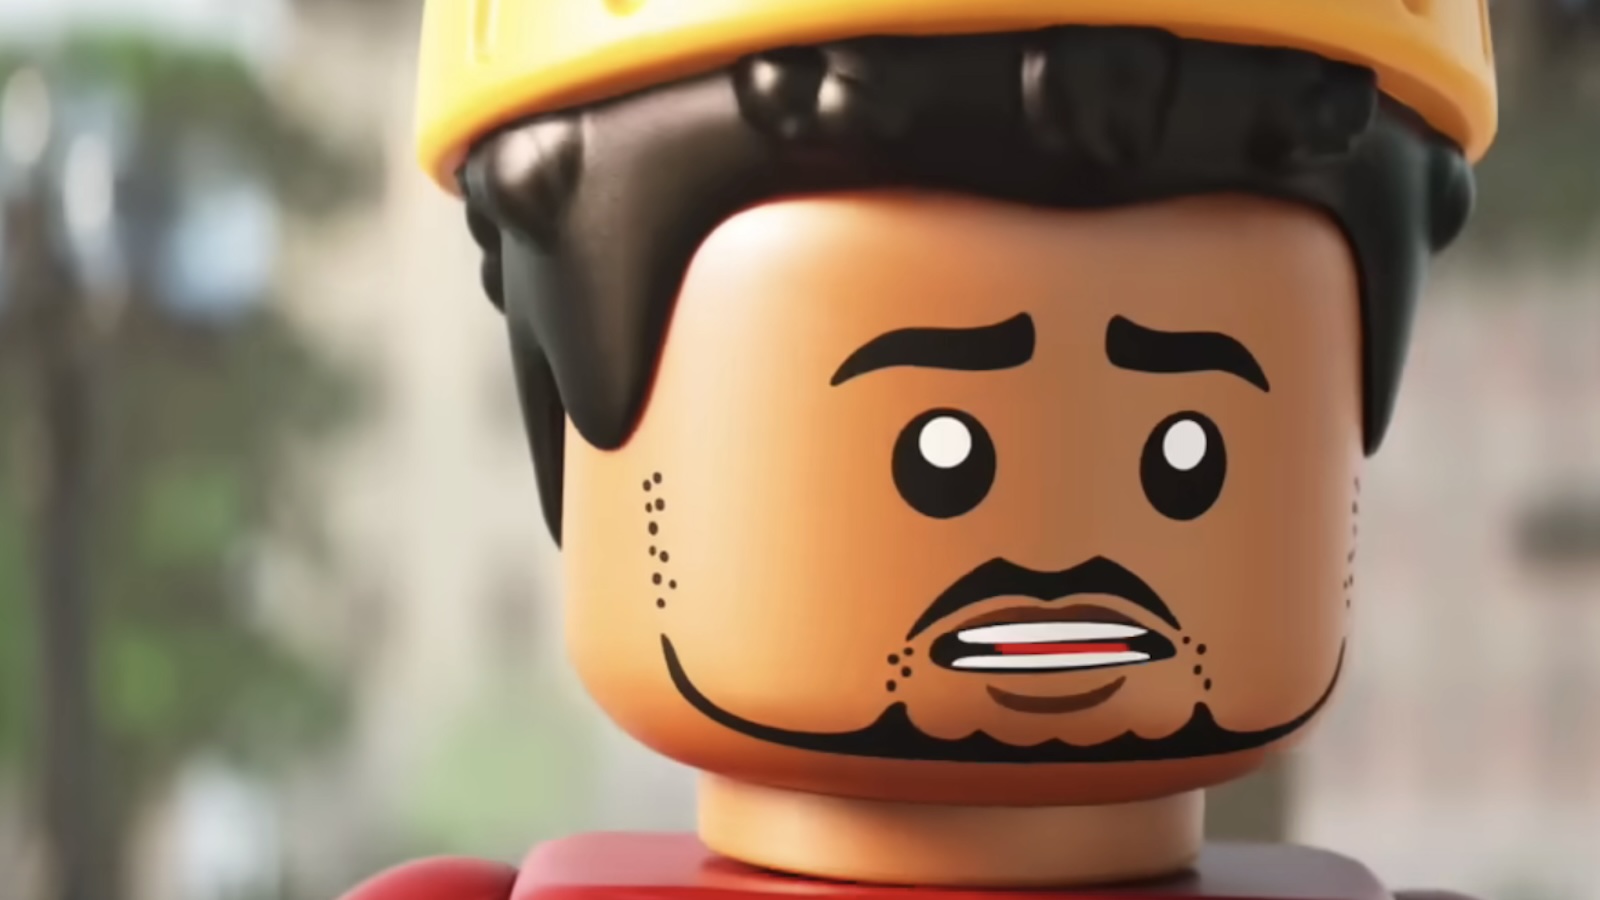 Кендрик Ламар снимается в фильме Фаррелла Уильямса «Лего», и фанаты пошутили так же.